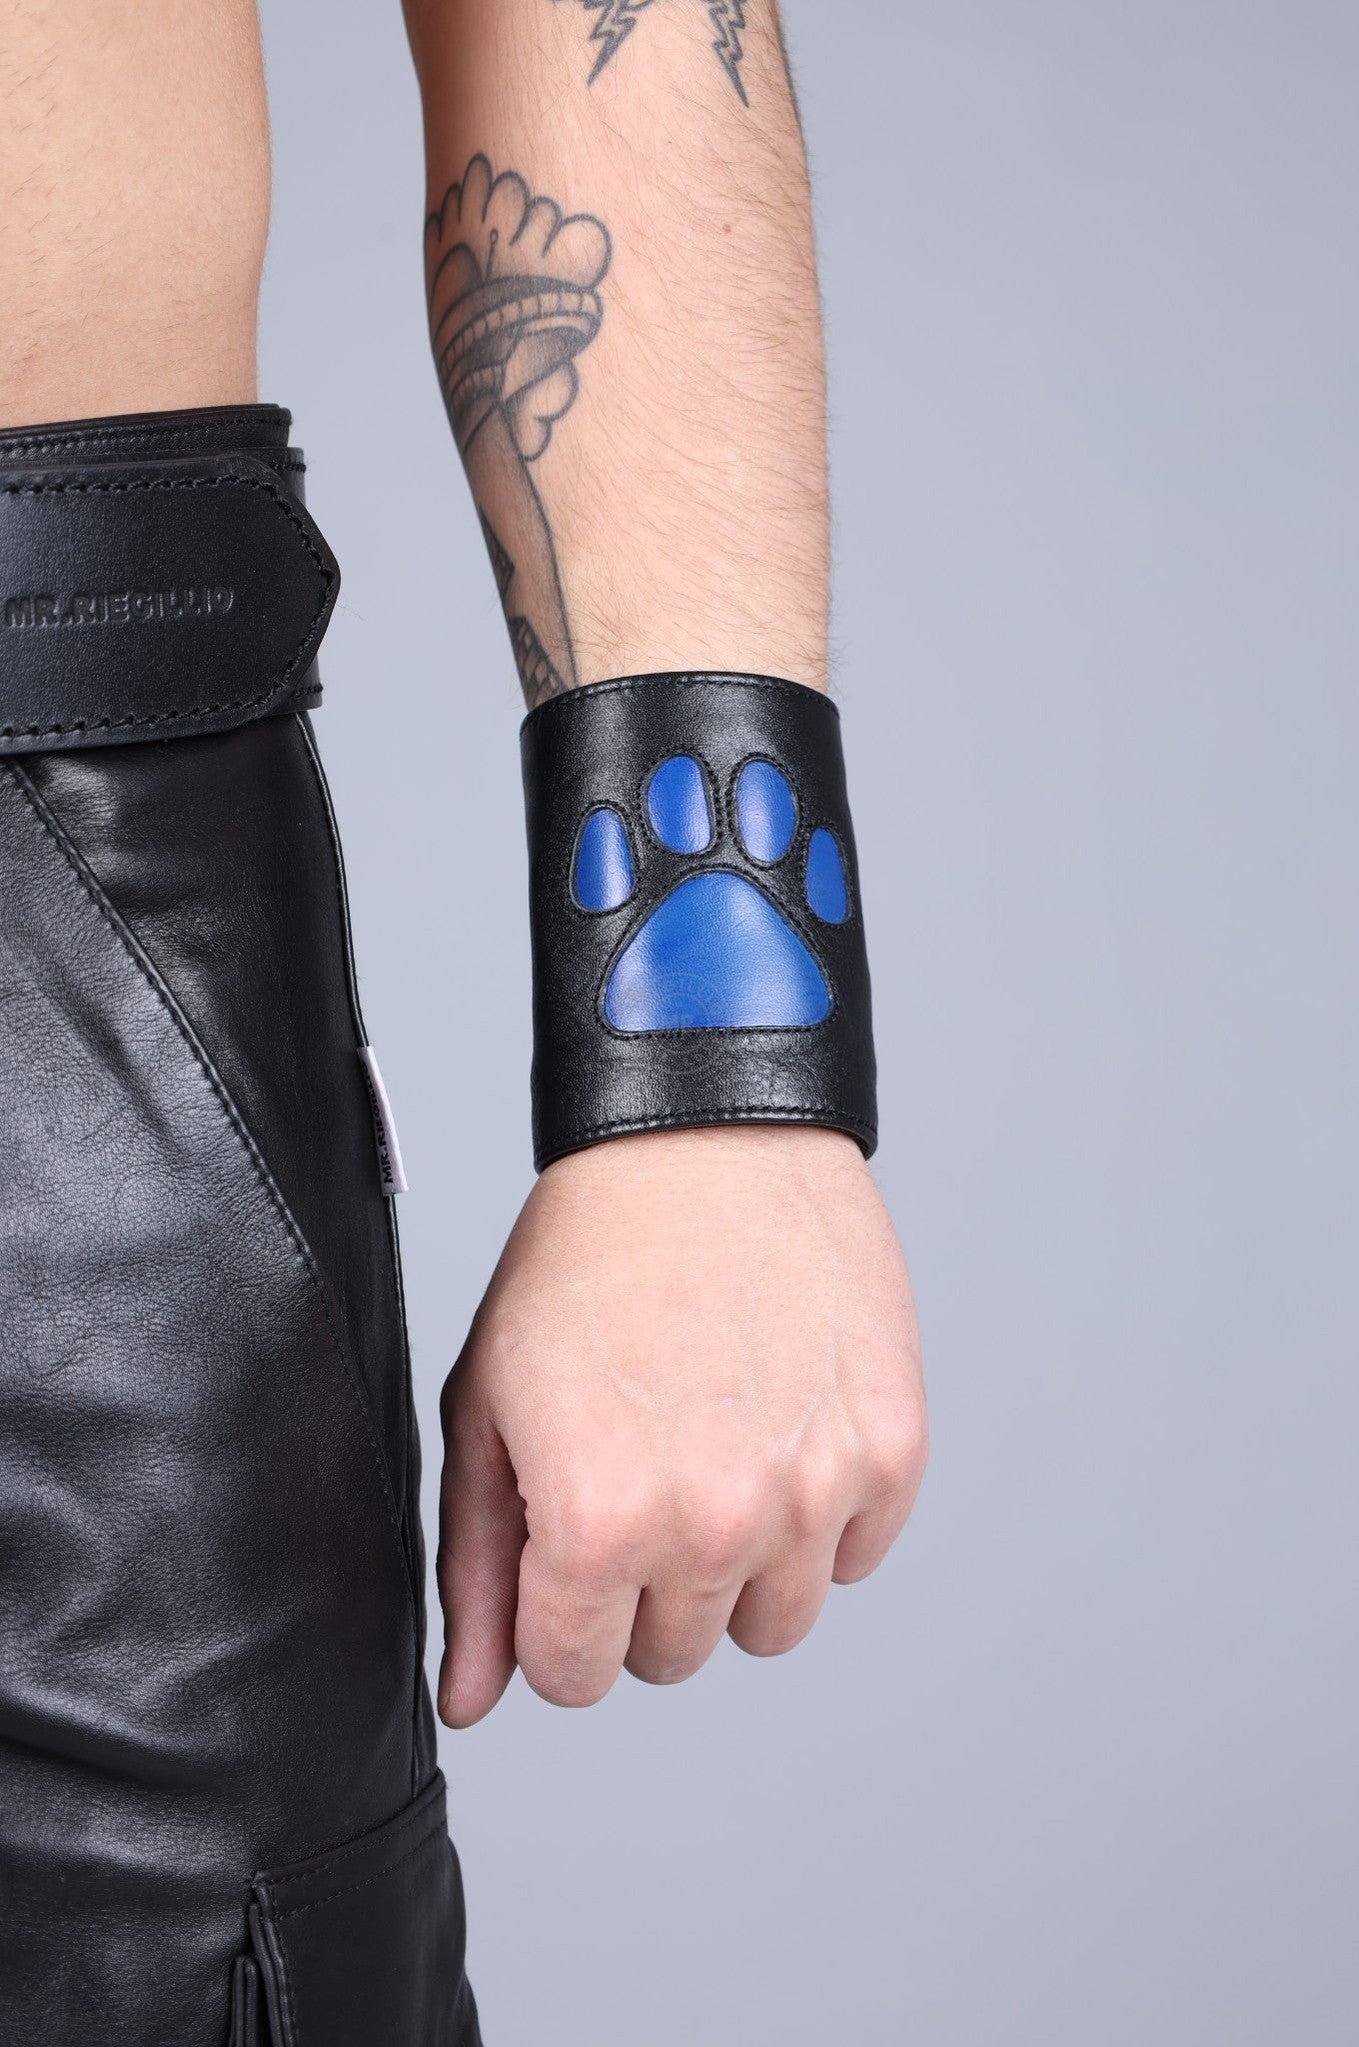 Black Leather Puppy Wrist Wallet - Kobalt Blue at MR. Riegillio